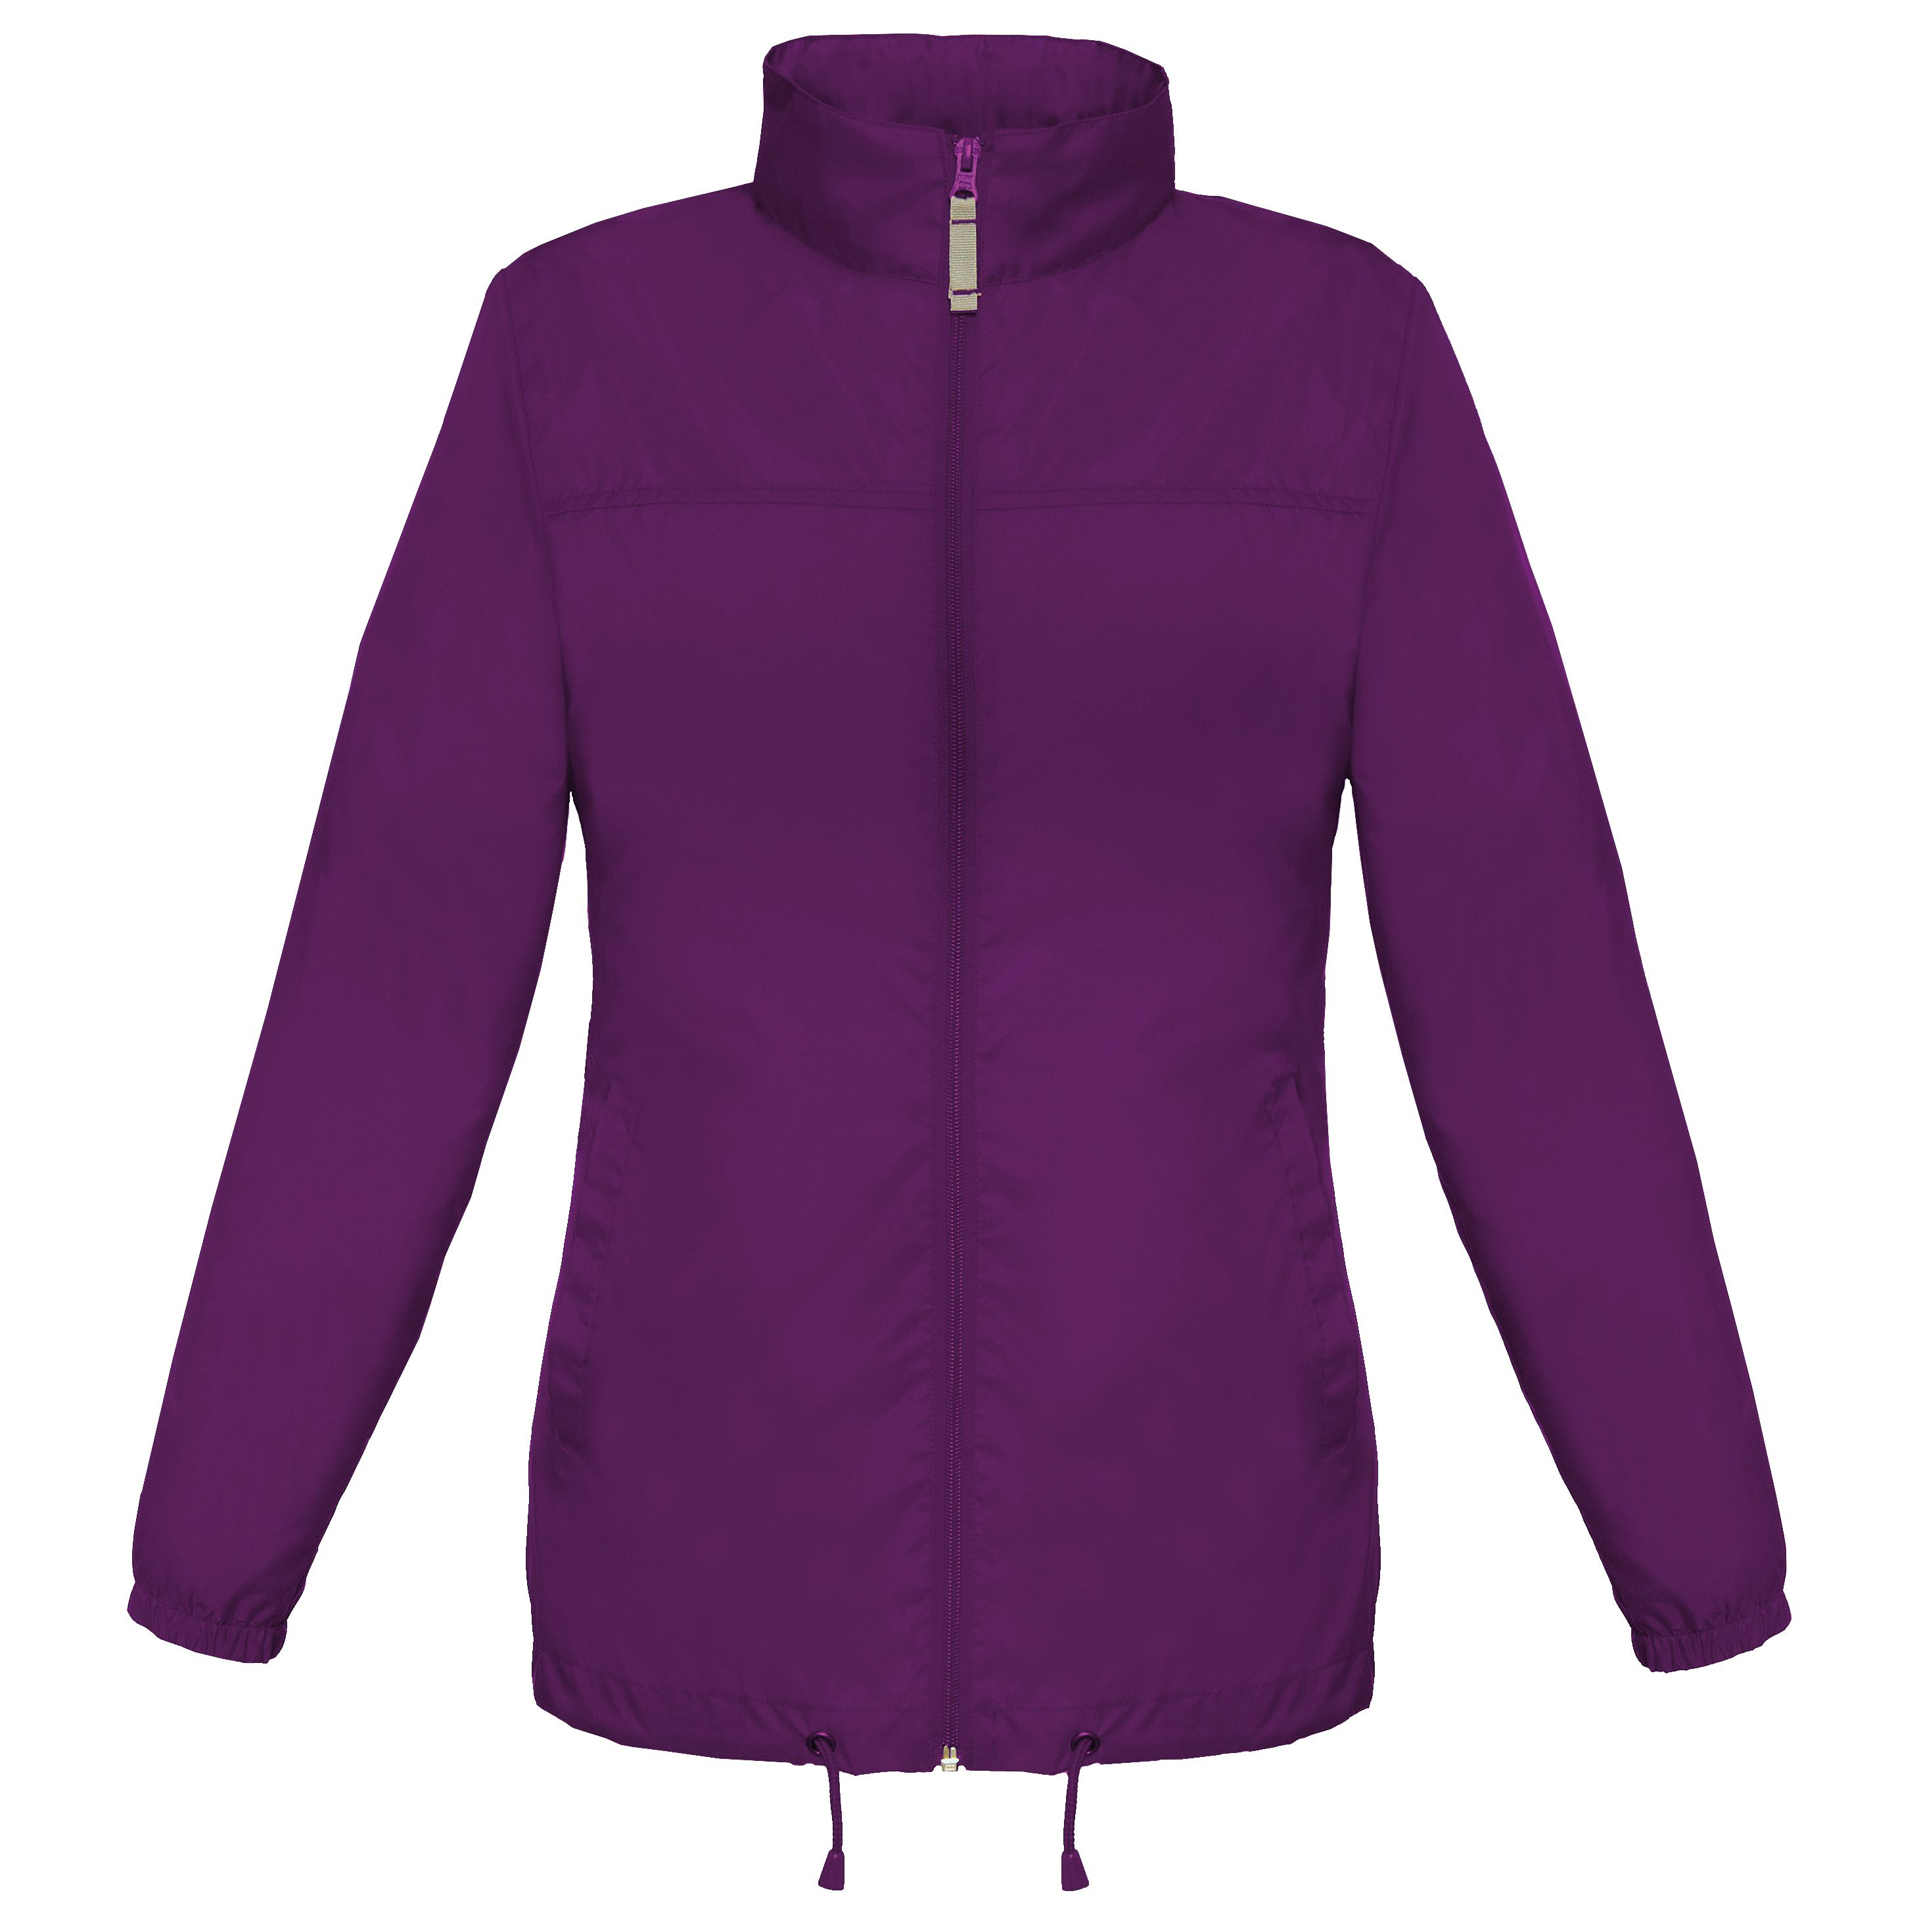 Women's Sirocco Jacket in purple